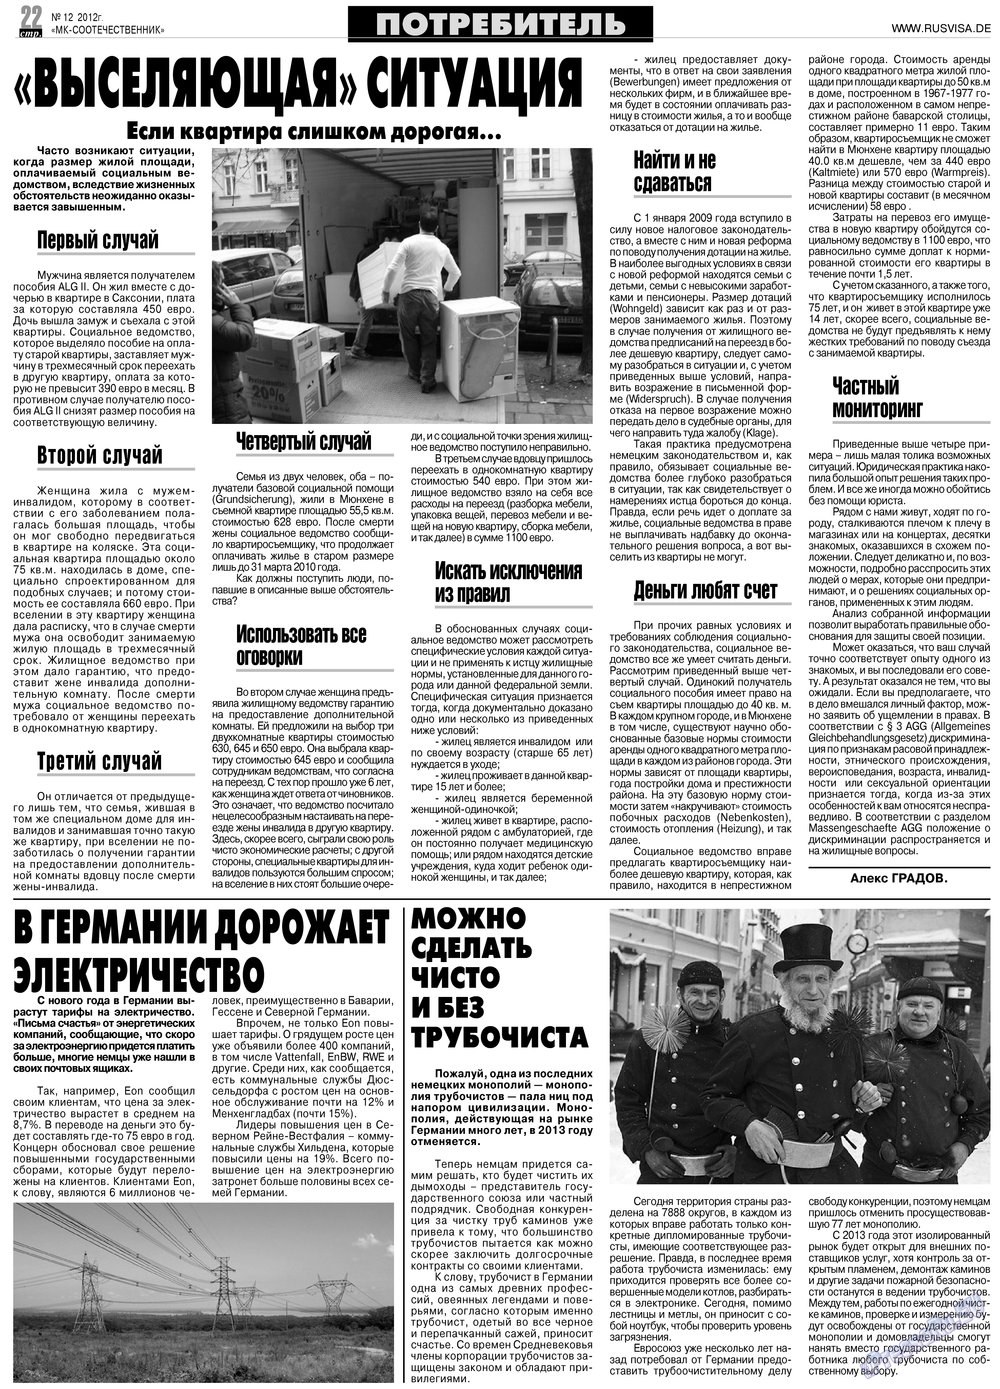 MK-Germany Landsleute (Zeitung). 2012 Jahr, Ausgabe 12, Seite 22